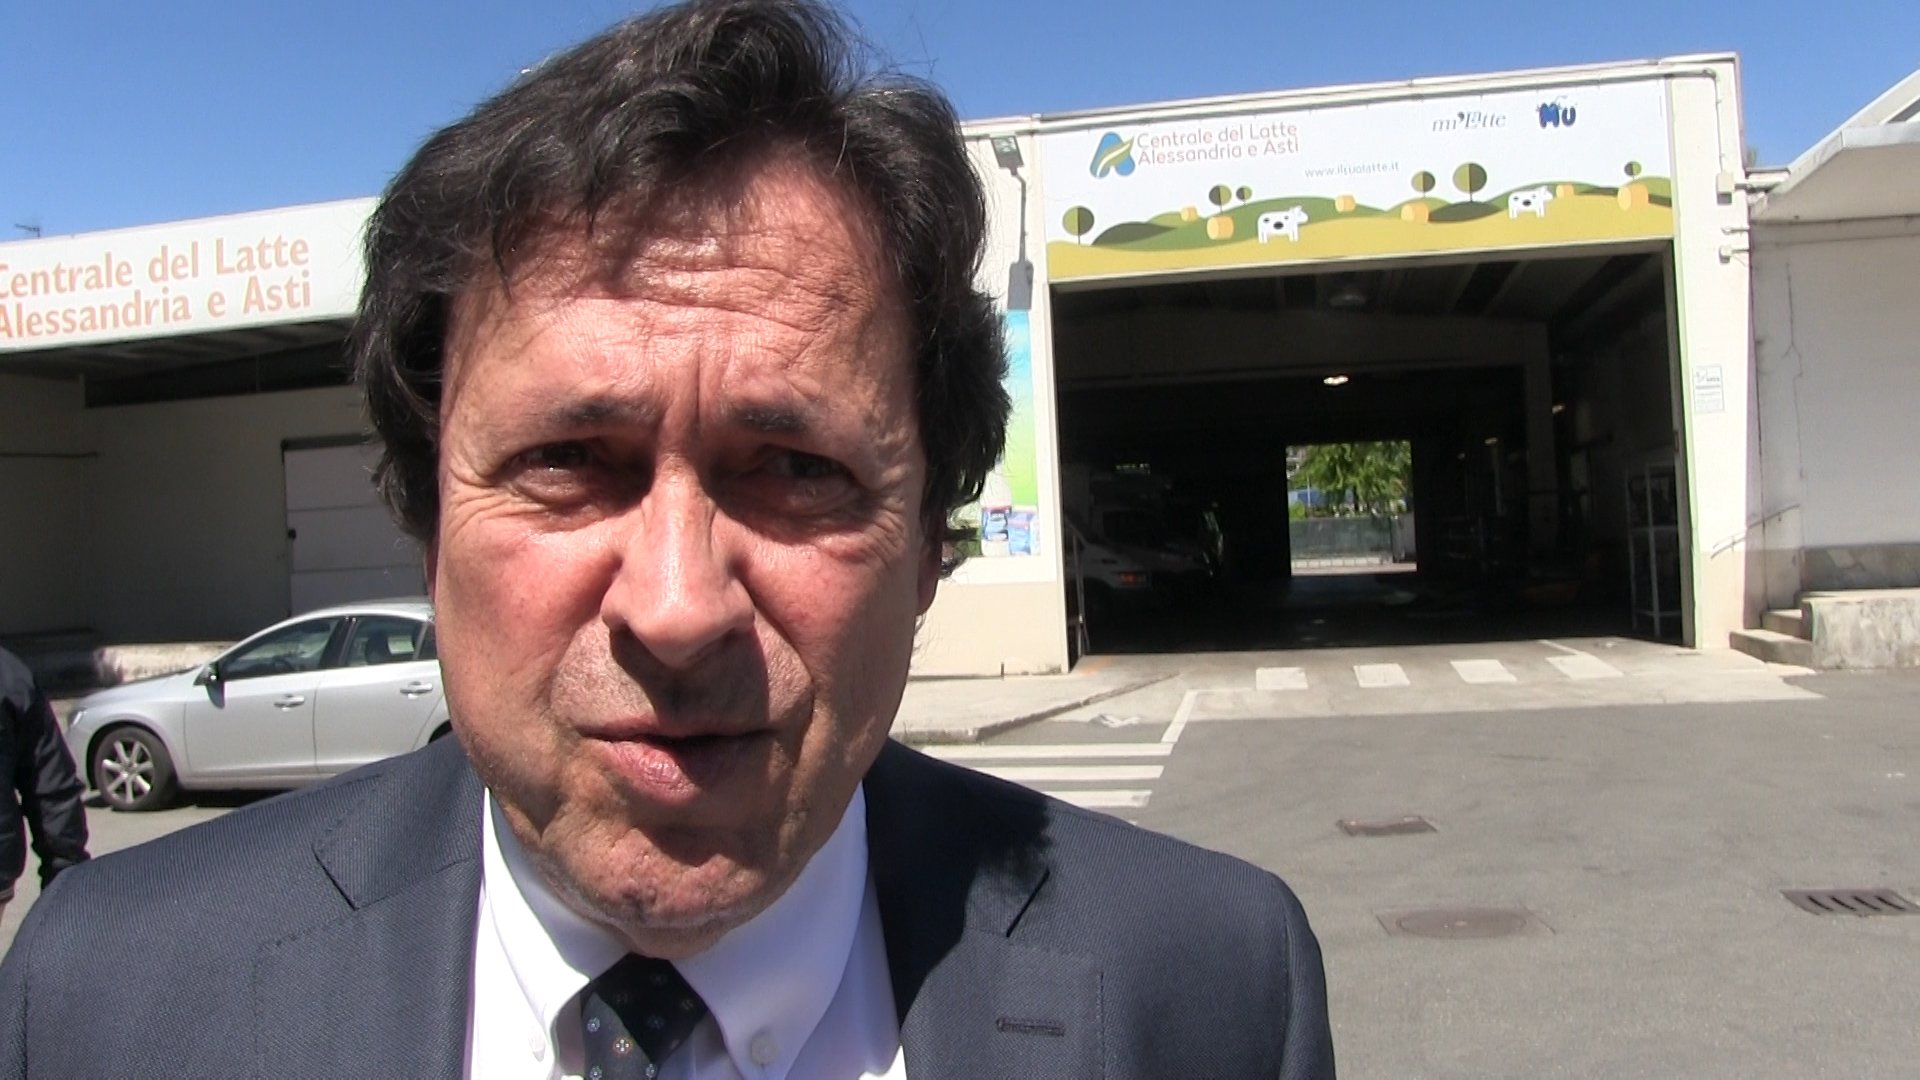 Unioncamere Piemonte: Gian Paolo Coscia è il nuovo presidente. “Mi aspetta un compito difficile”